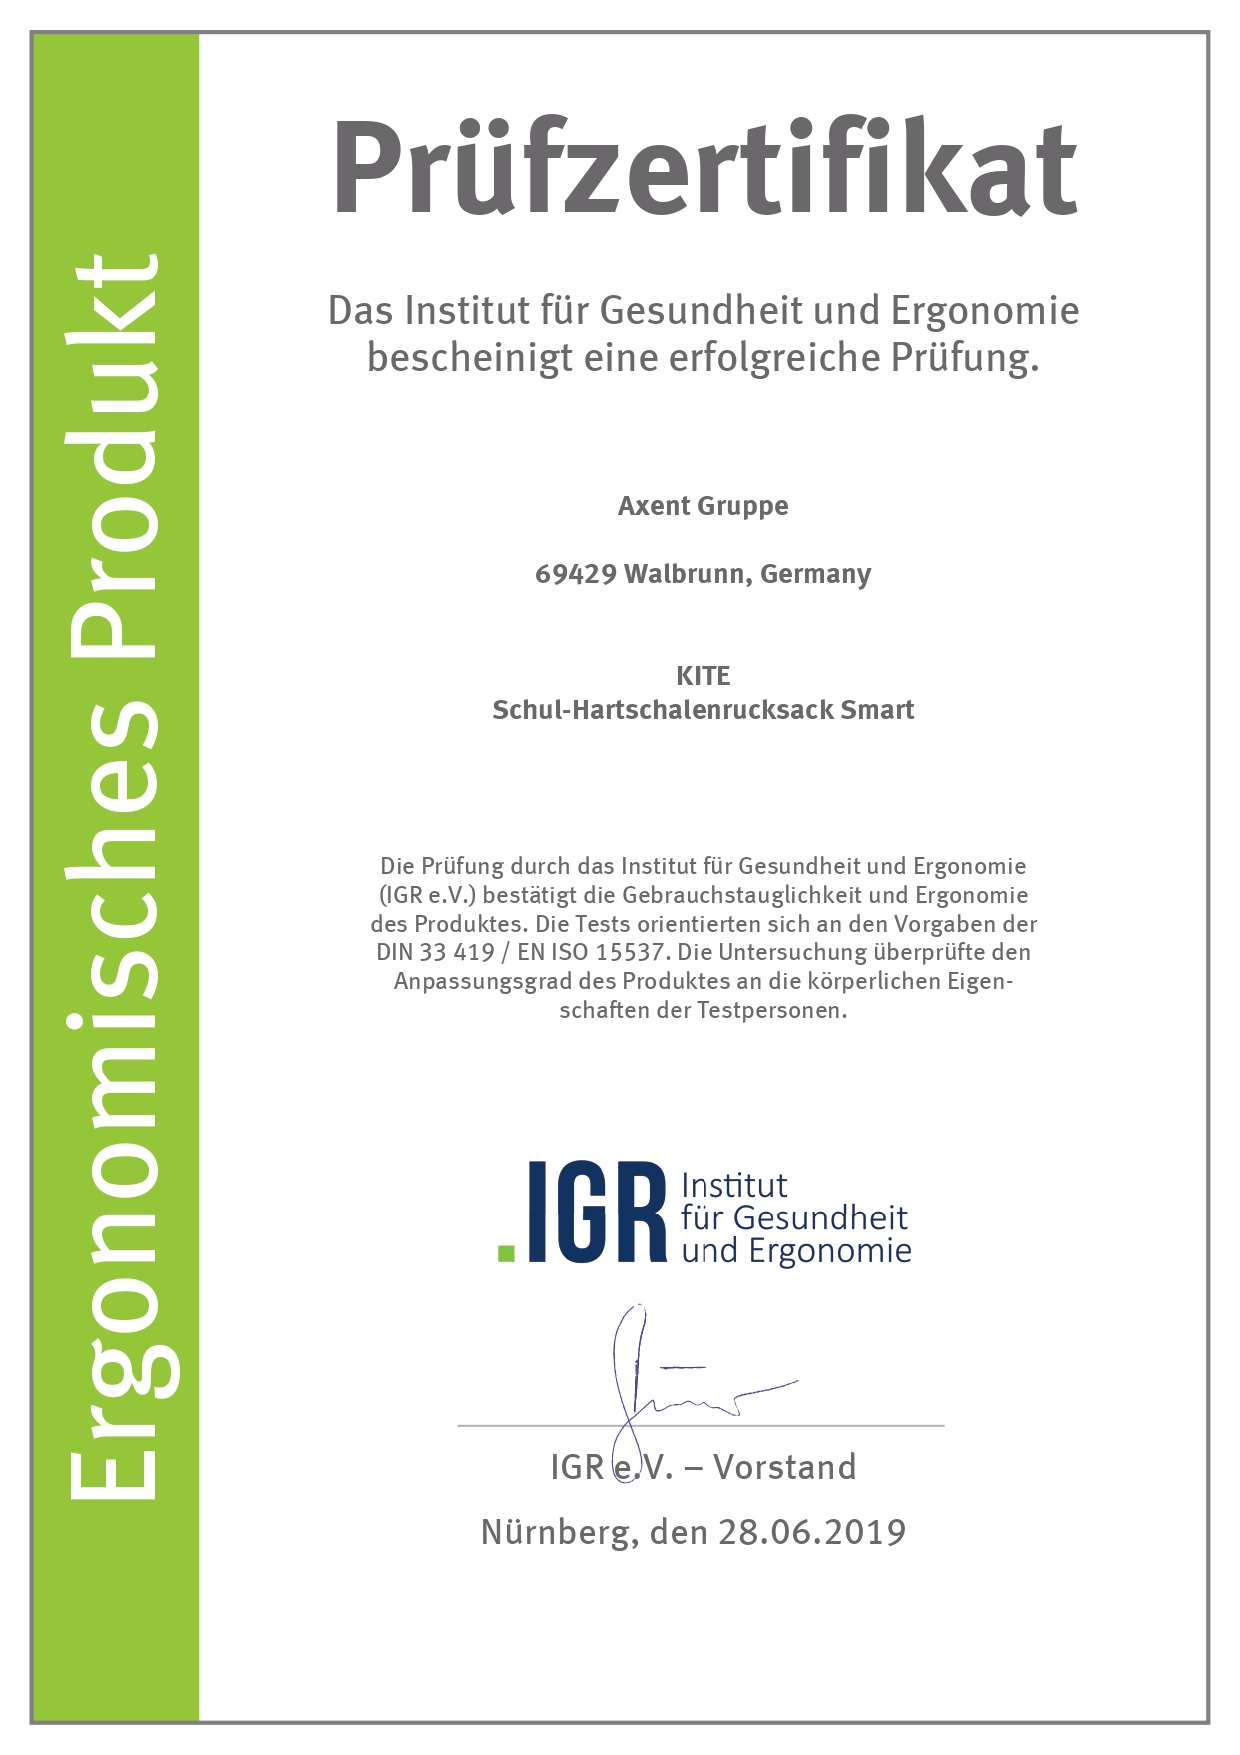 Сертифікат Німецького інституту здоров'я і ергономіки IGR - моделі Smart 702 і 720